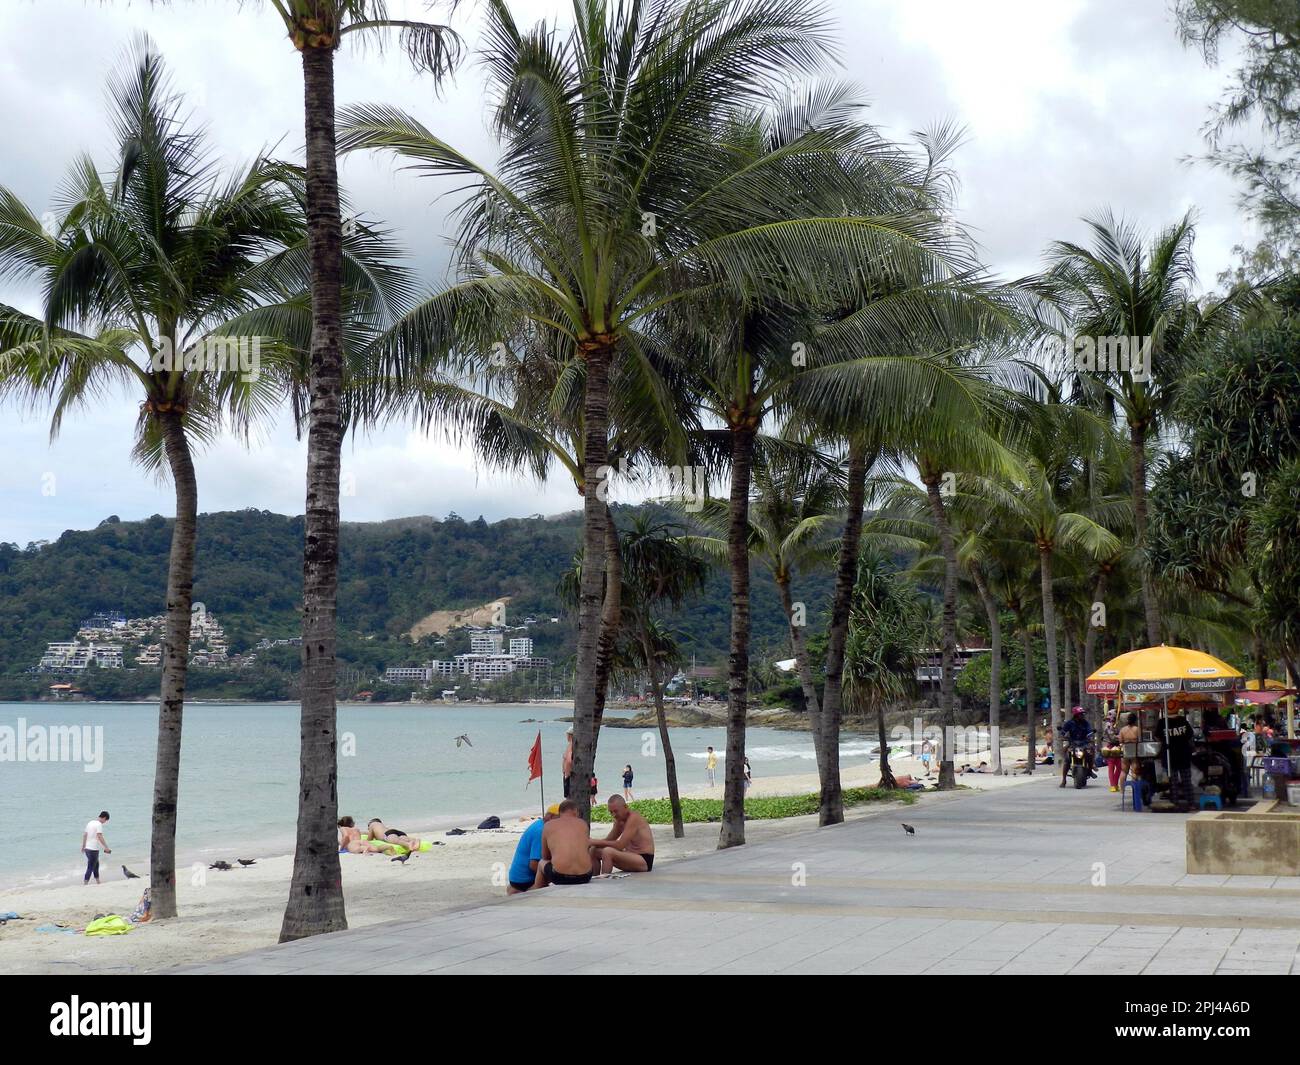 Thailand, Phuket Island, Patong Beach: Die von Palmen gesäumte Promenade, der Sandstrand und Hotels auf der anderen Seite der Bucht. Stockfoto